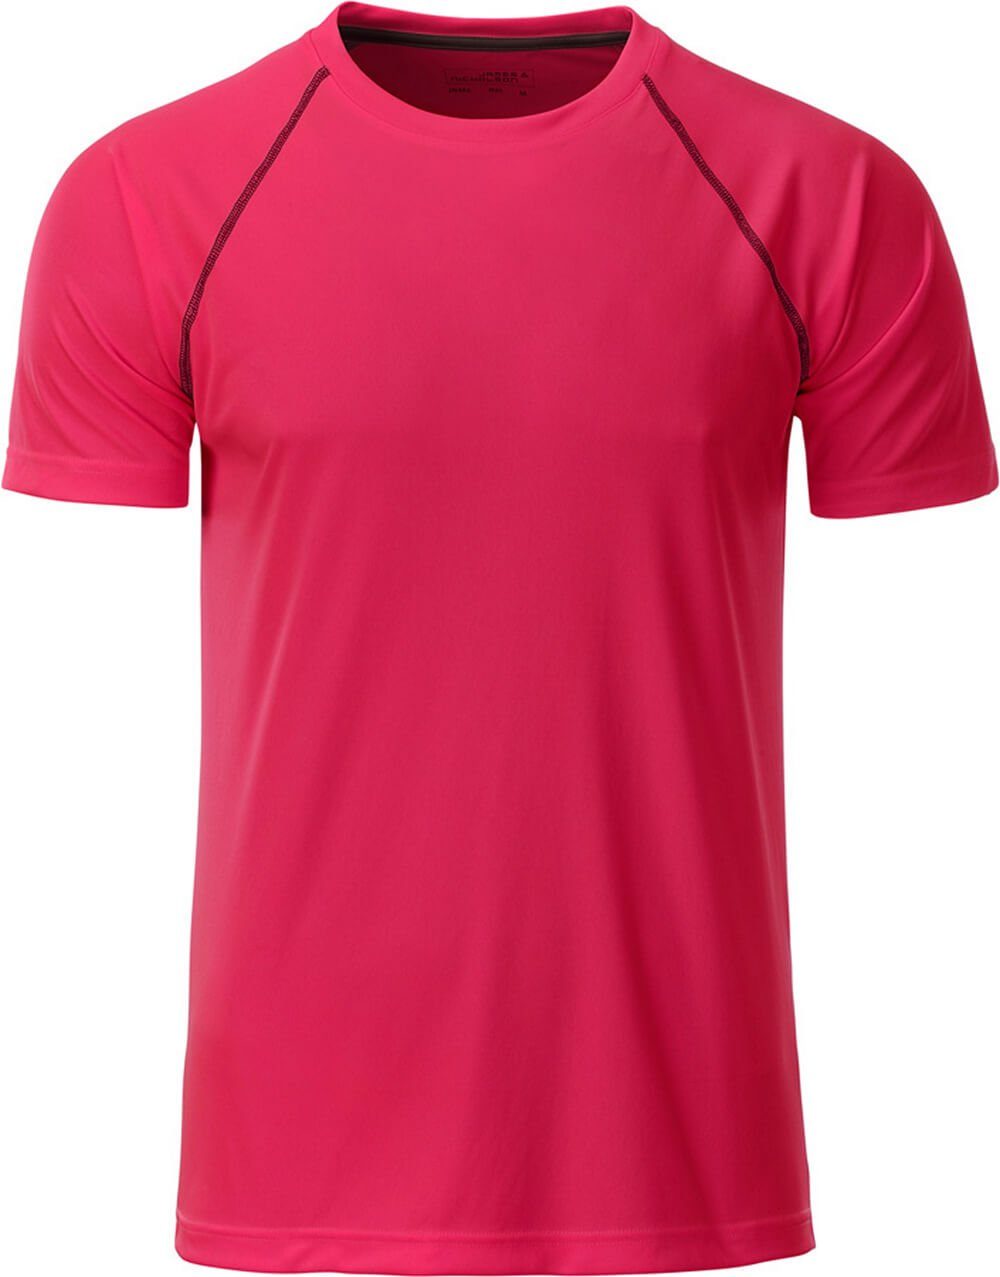 James & Nicholson Funktionsshirt James & Nicholson JN 496 Herren Funktions-Shirt schnell trocknend bright pink/titan